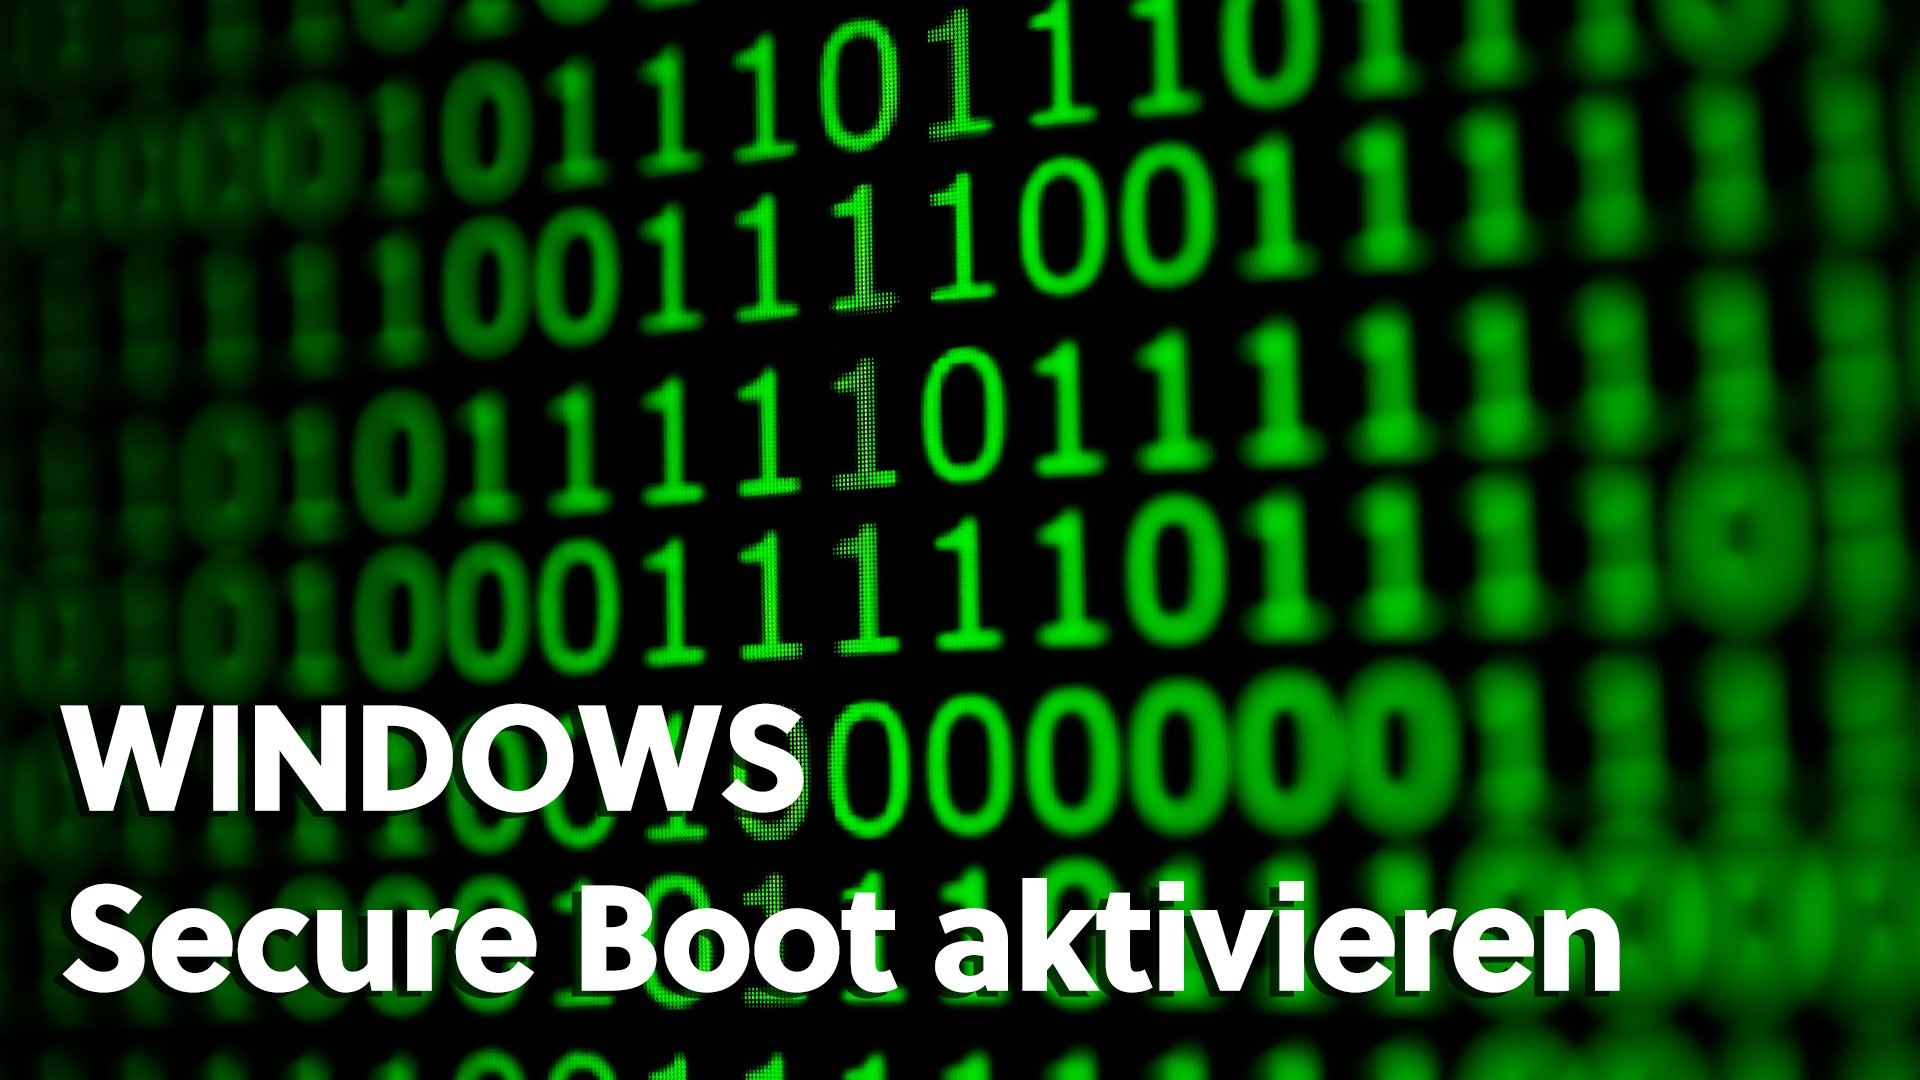 Windows Secure Boot aktivieren: So funktioniert es